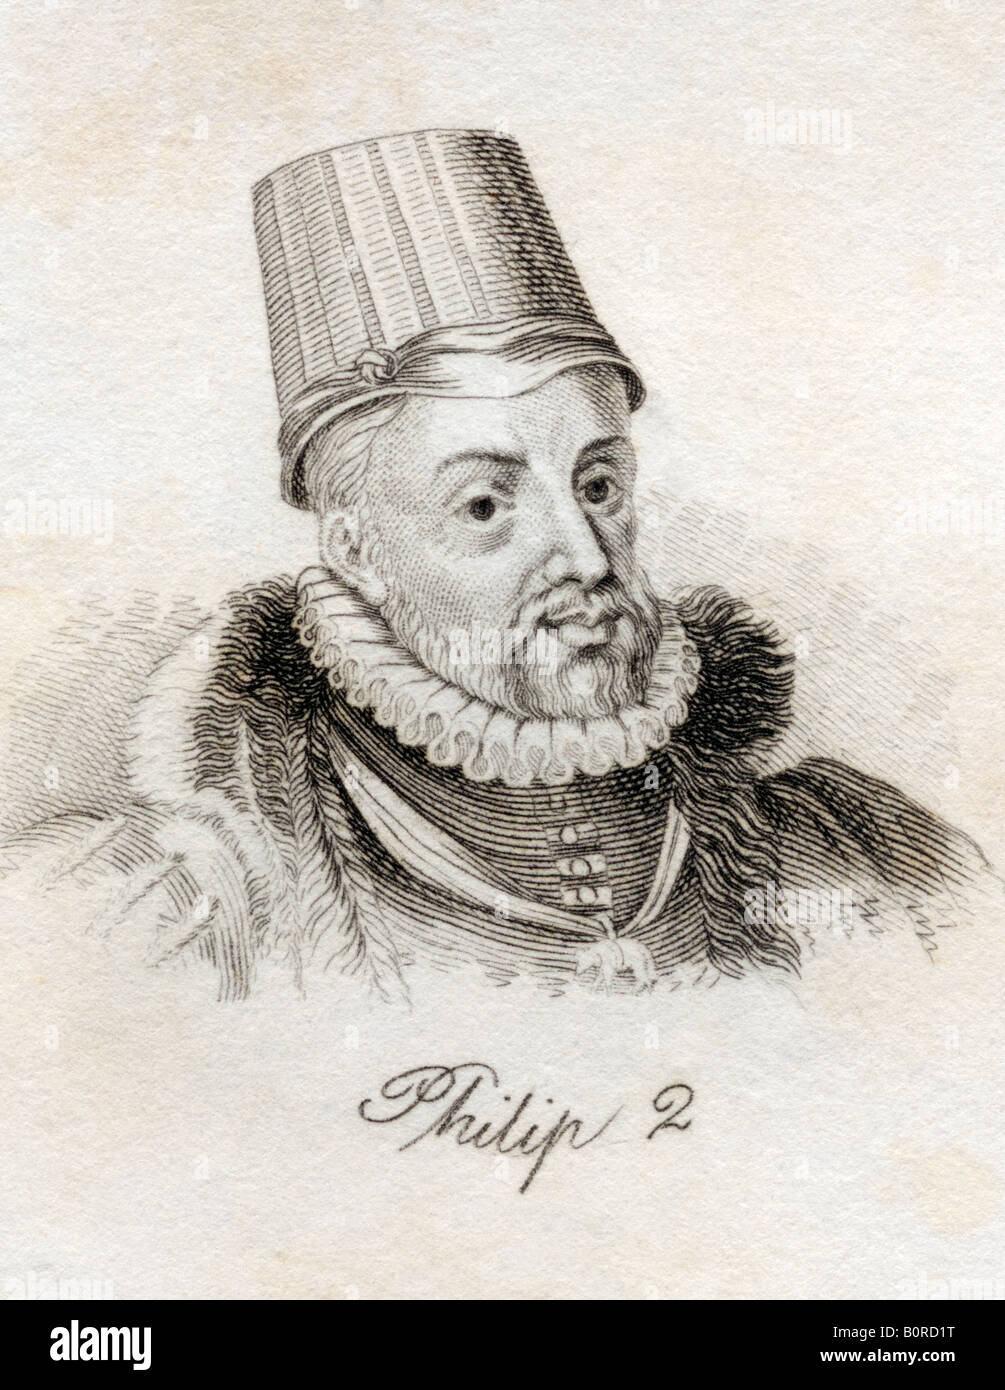 Philip II, 1527 - 1598. König von Spanien, 1556 - 1598, Asturias II. De Espana. Aus dem Buch Crabbs Historical Dictionary, veröffentlicht 1825. Stockfoto